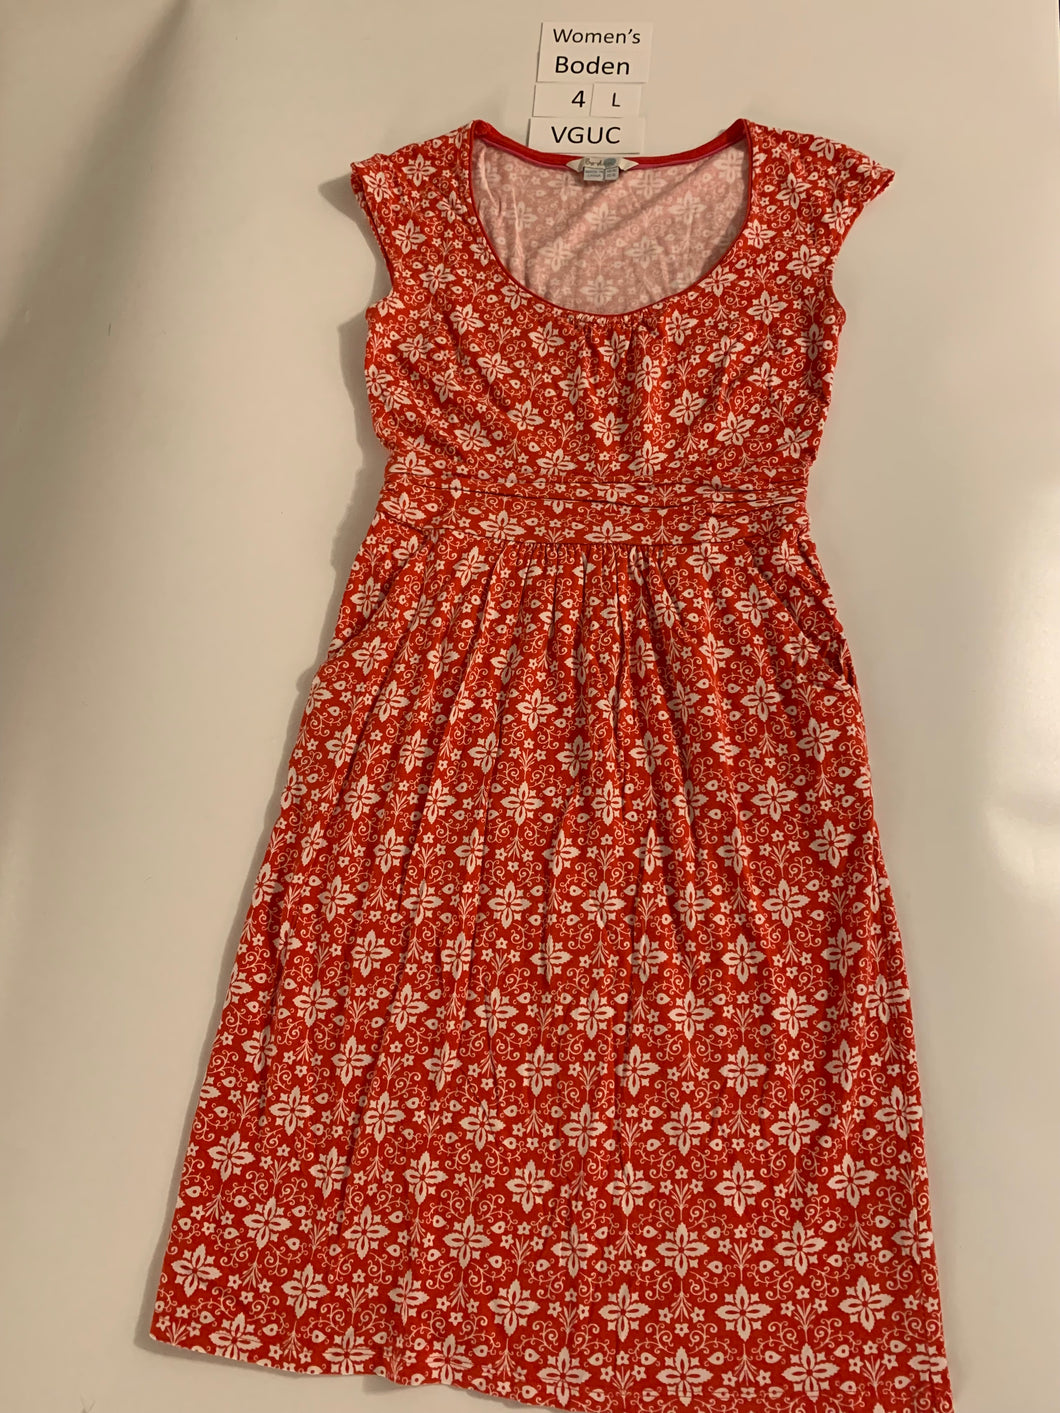 Boden Women's Red PrintJersey Dress 4